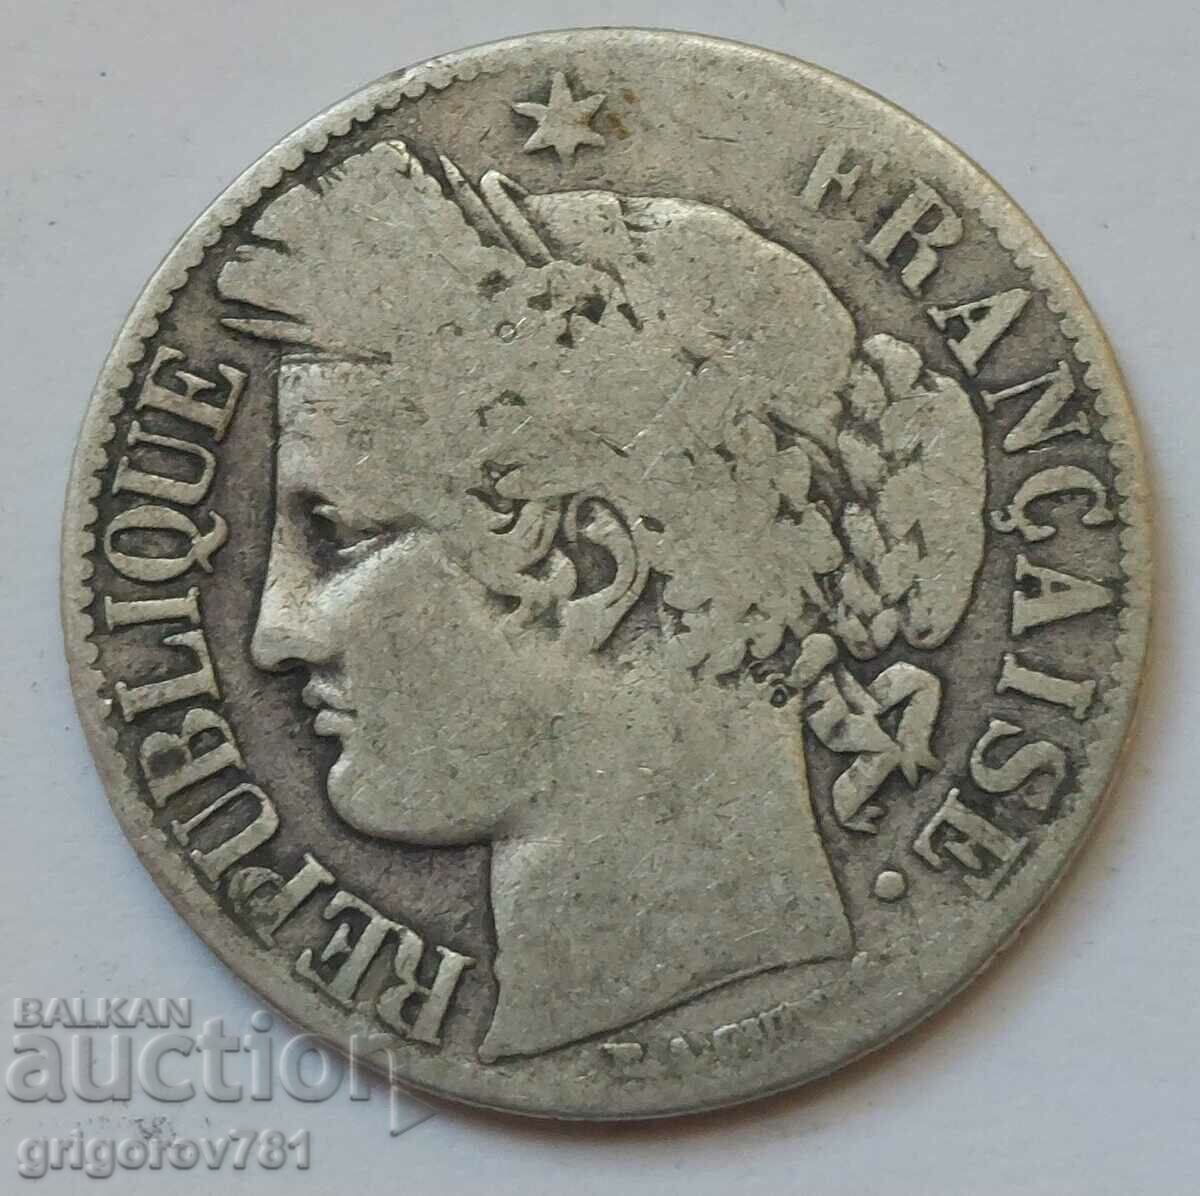 Ασήμι 1 φράγκου Γαλλία 1872 A - Ασημένιο νόμισμα #52